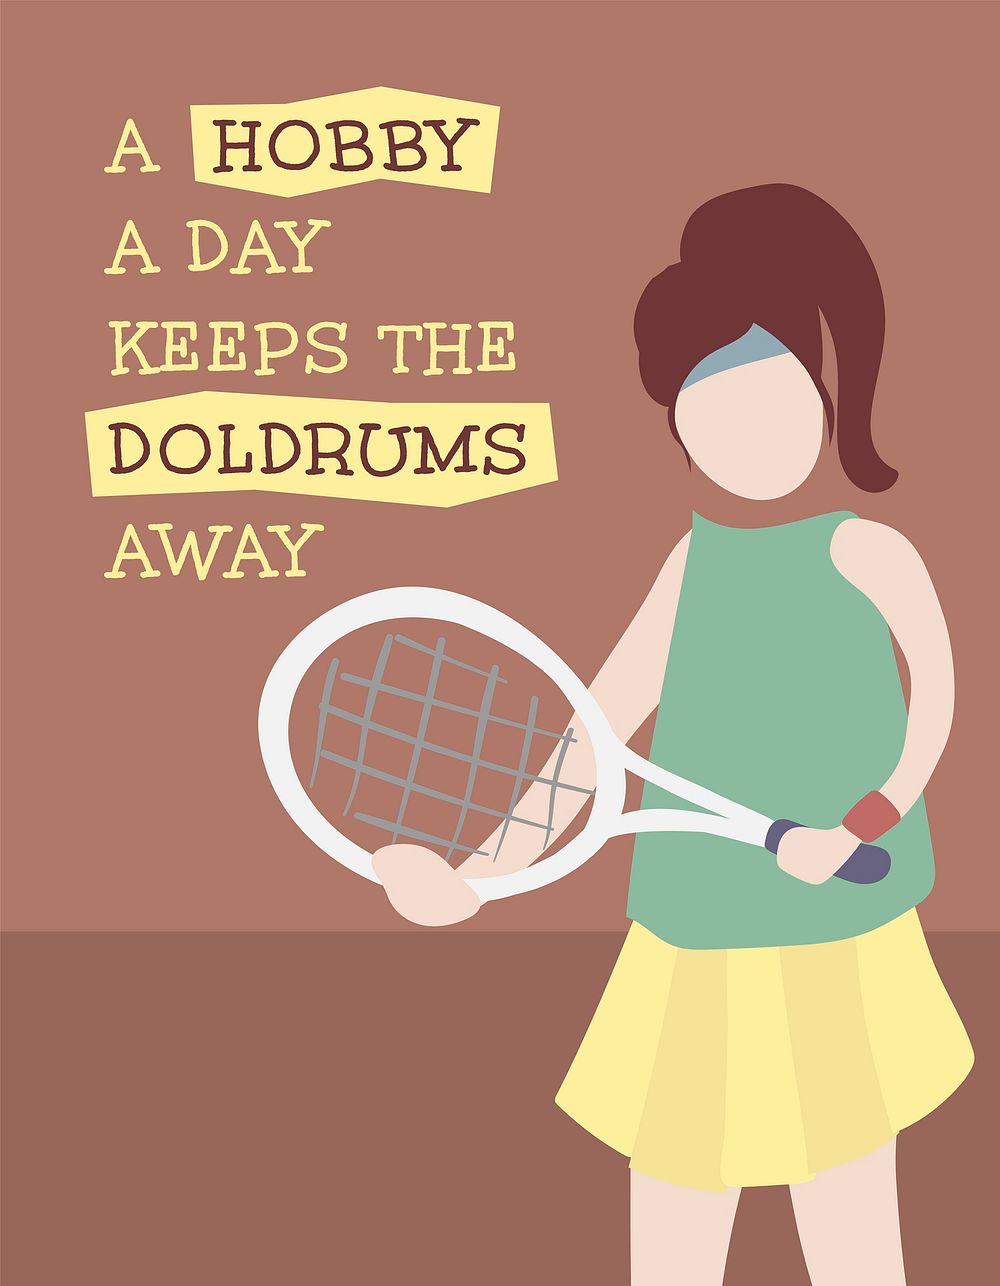 Tennis flyer template, editable hobby design psd